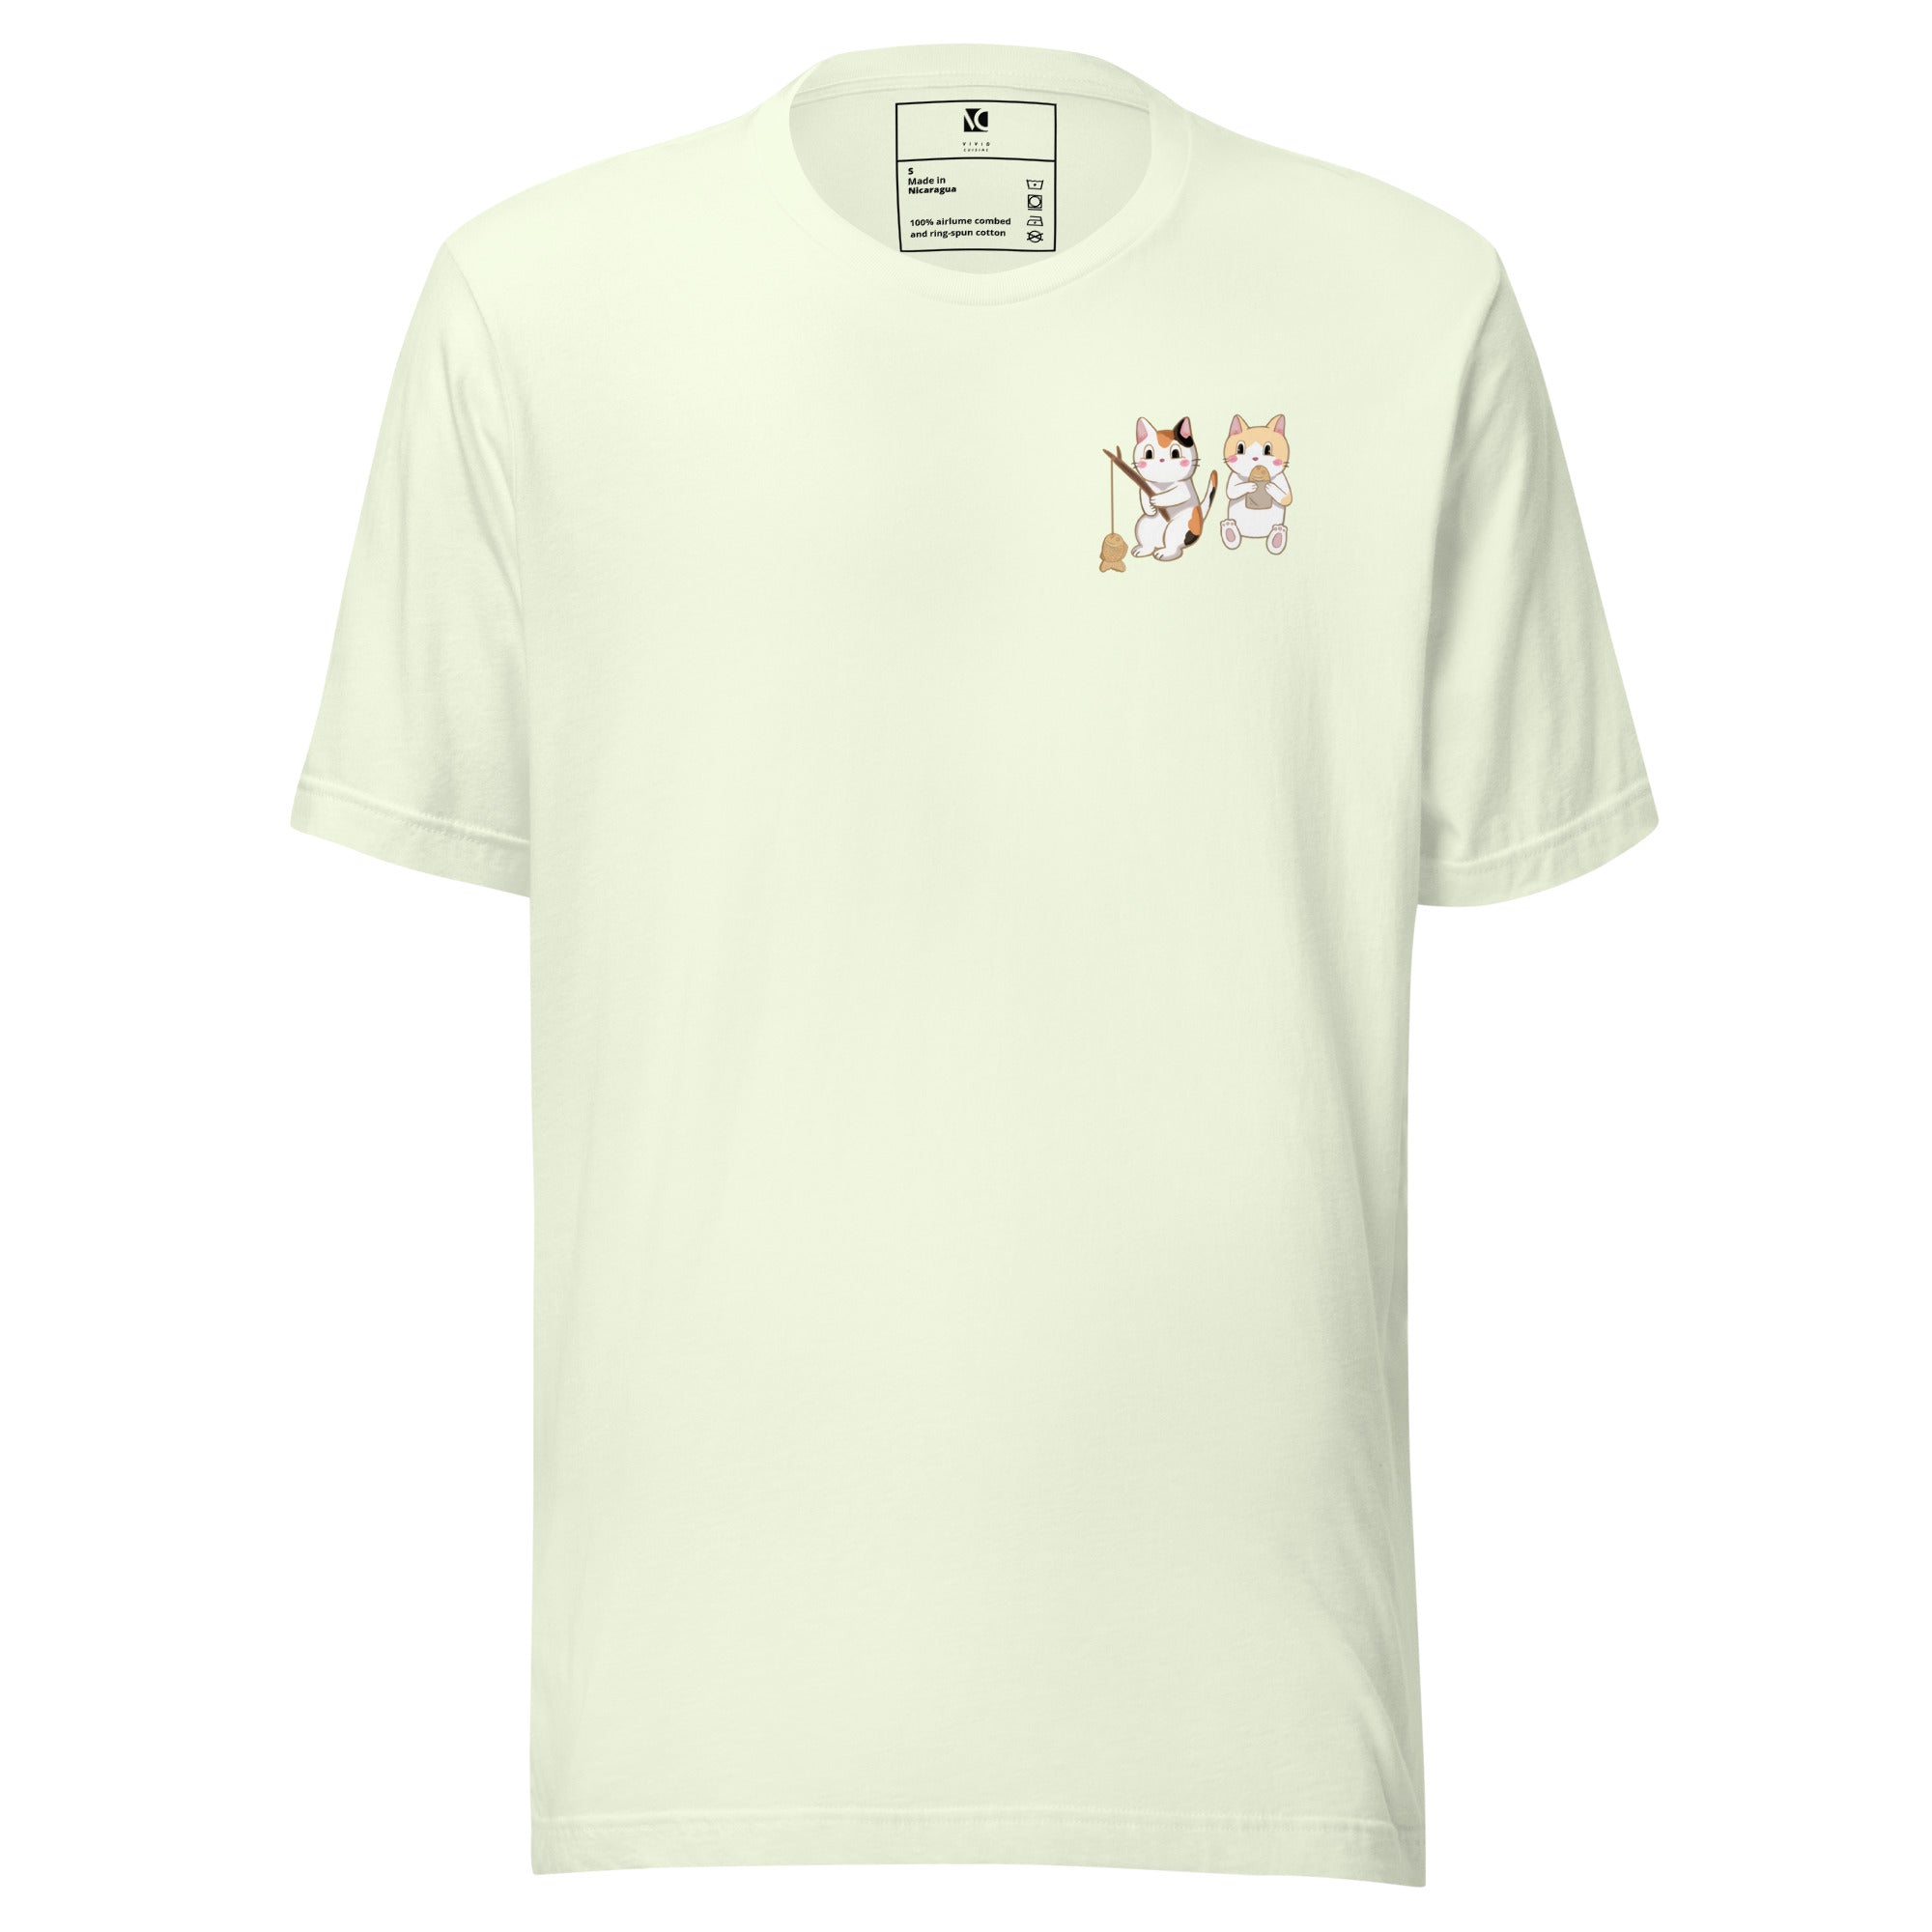 Cats &amp; Taiyaki - Unisex T-Shirt